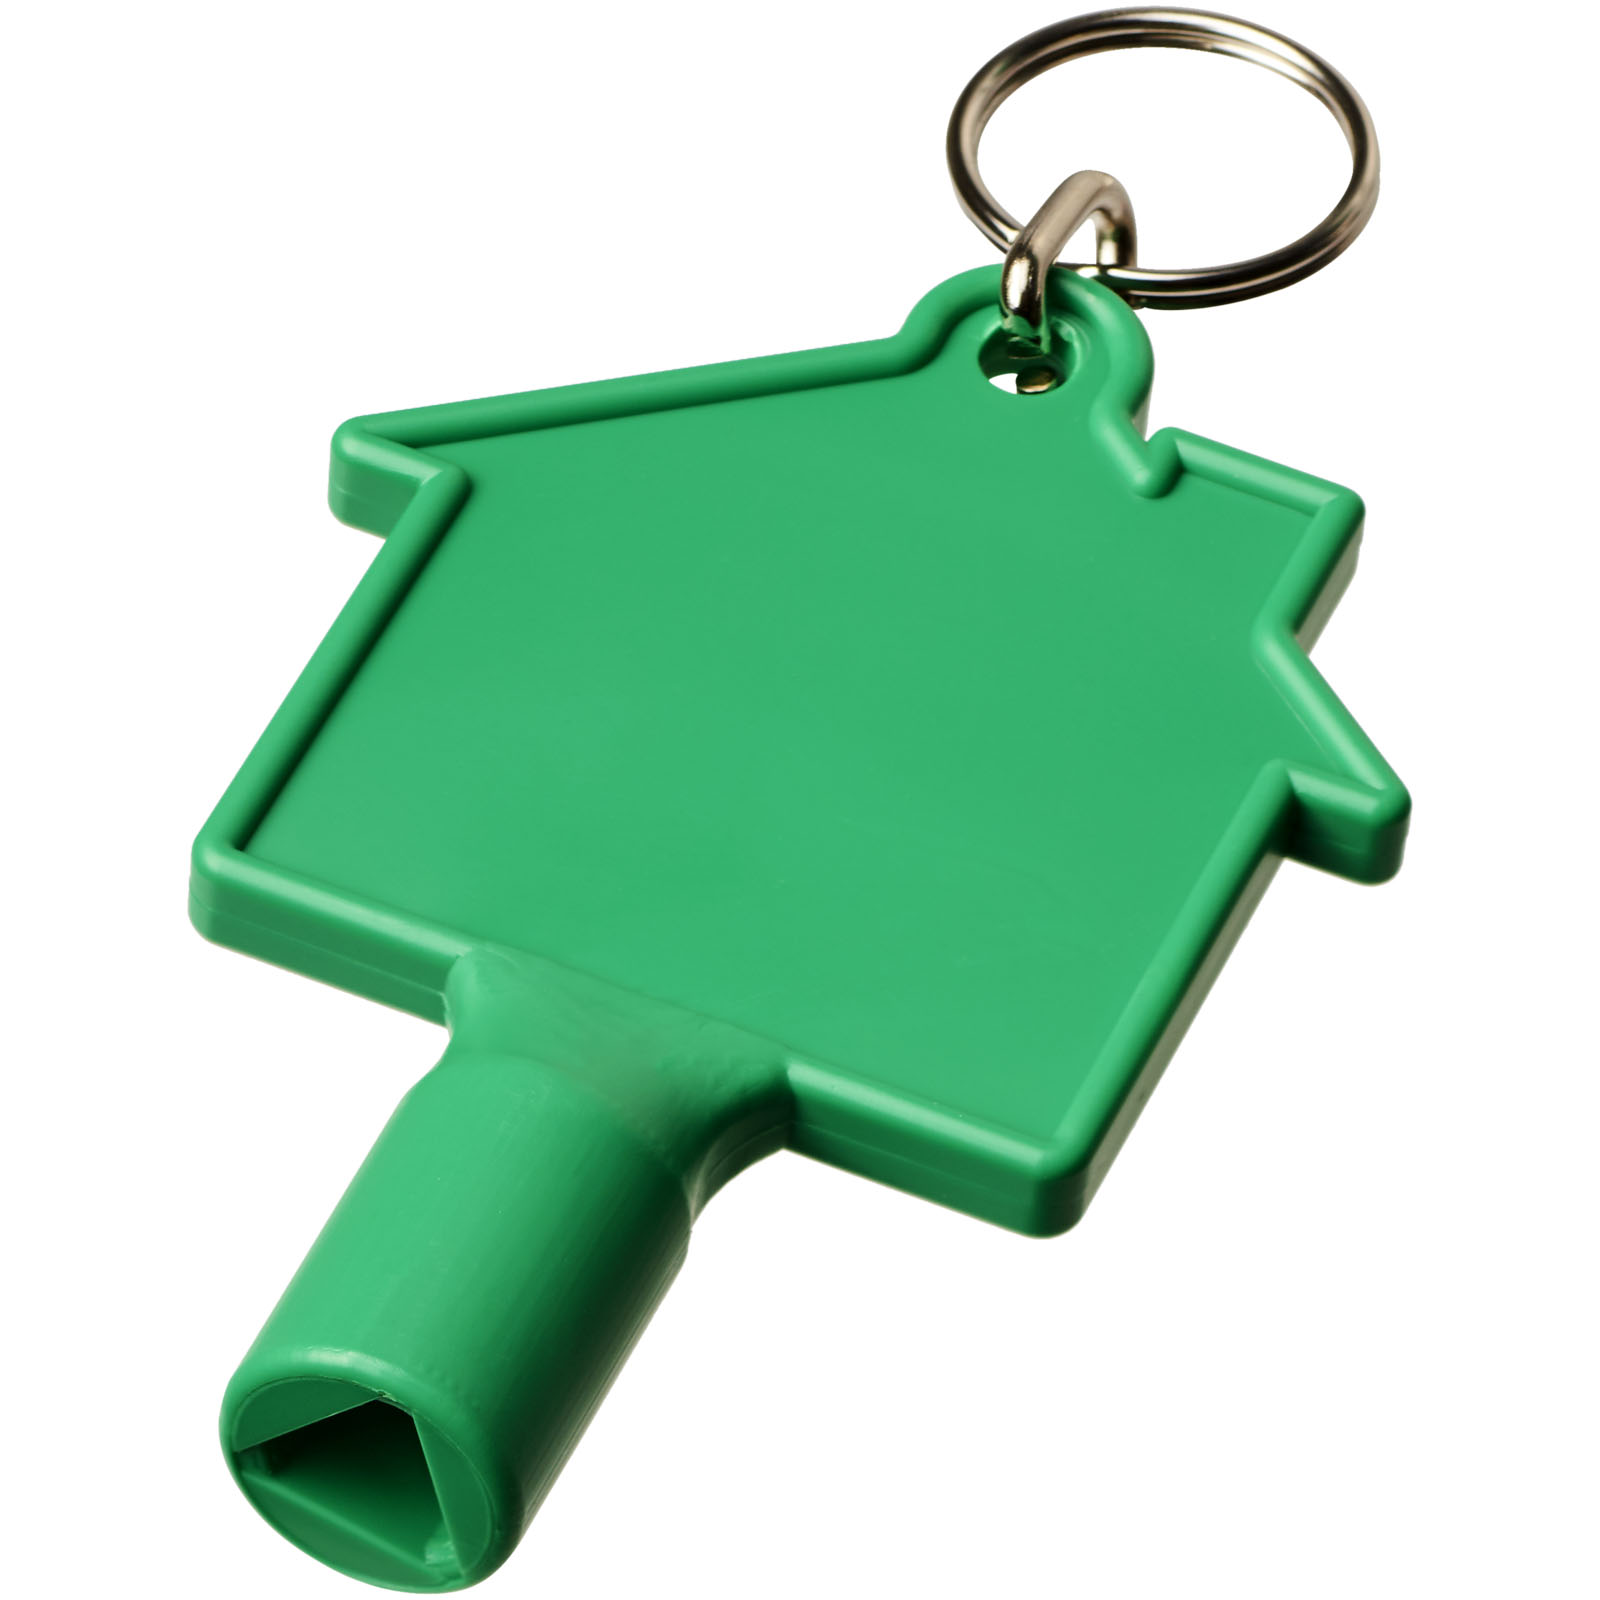 Porte-clés publicitaires - Clé utilitaire Maximilian en forme de maison avec porte-clés  - 0